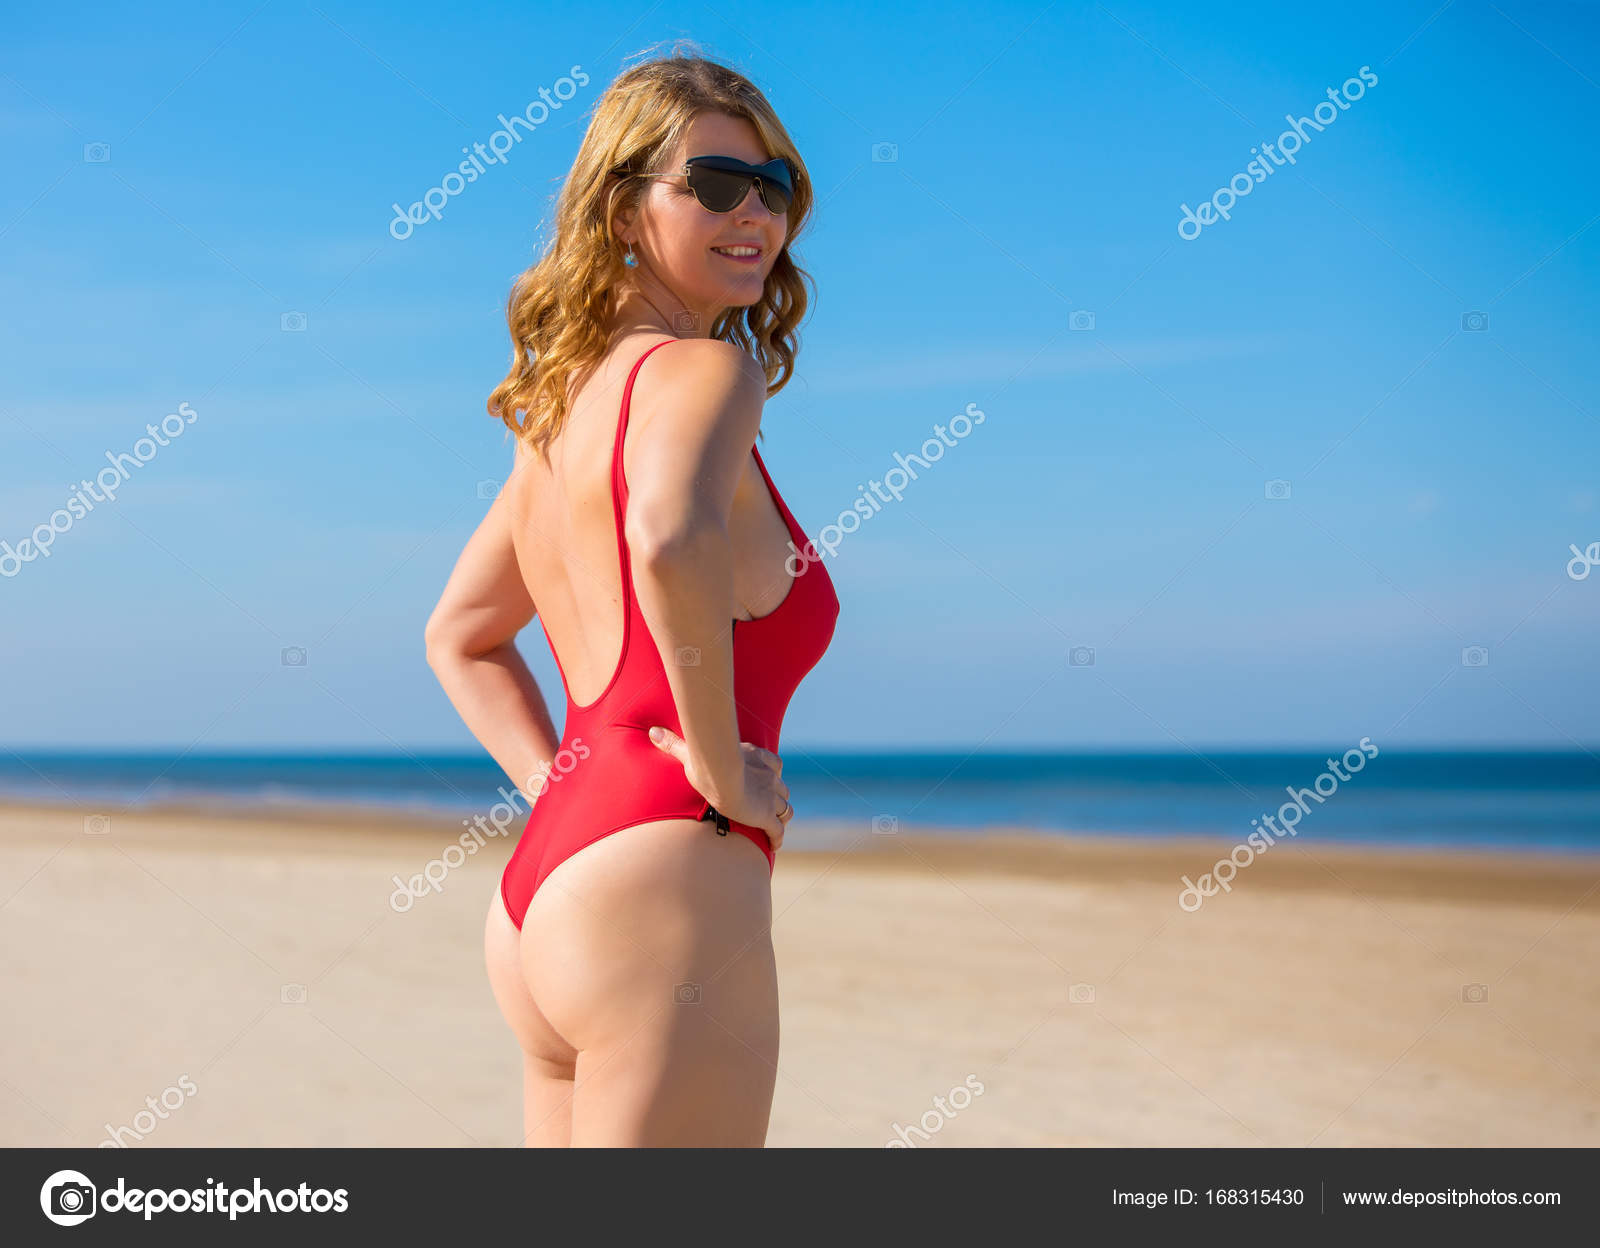 1960s Busty Bikini Girl Photo * Lifeguards Beach Bathing Suit